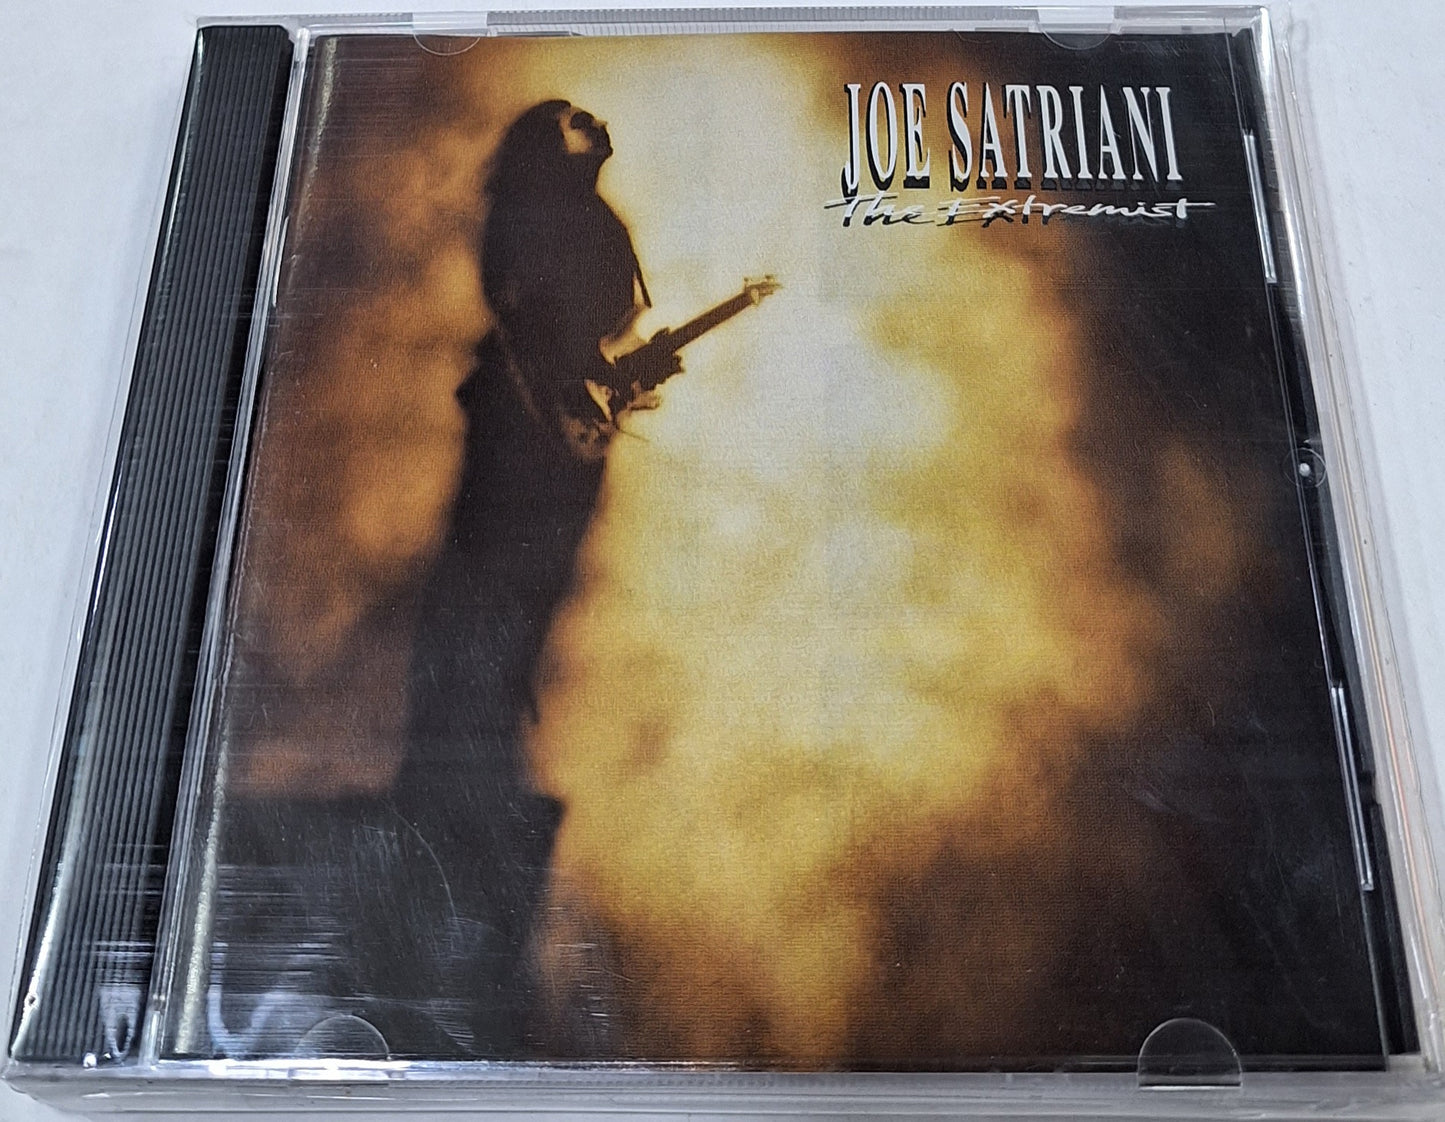 JOE SATRIANI - THE EXTREMIST  CD